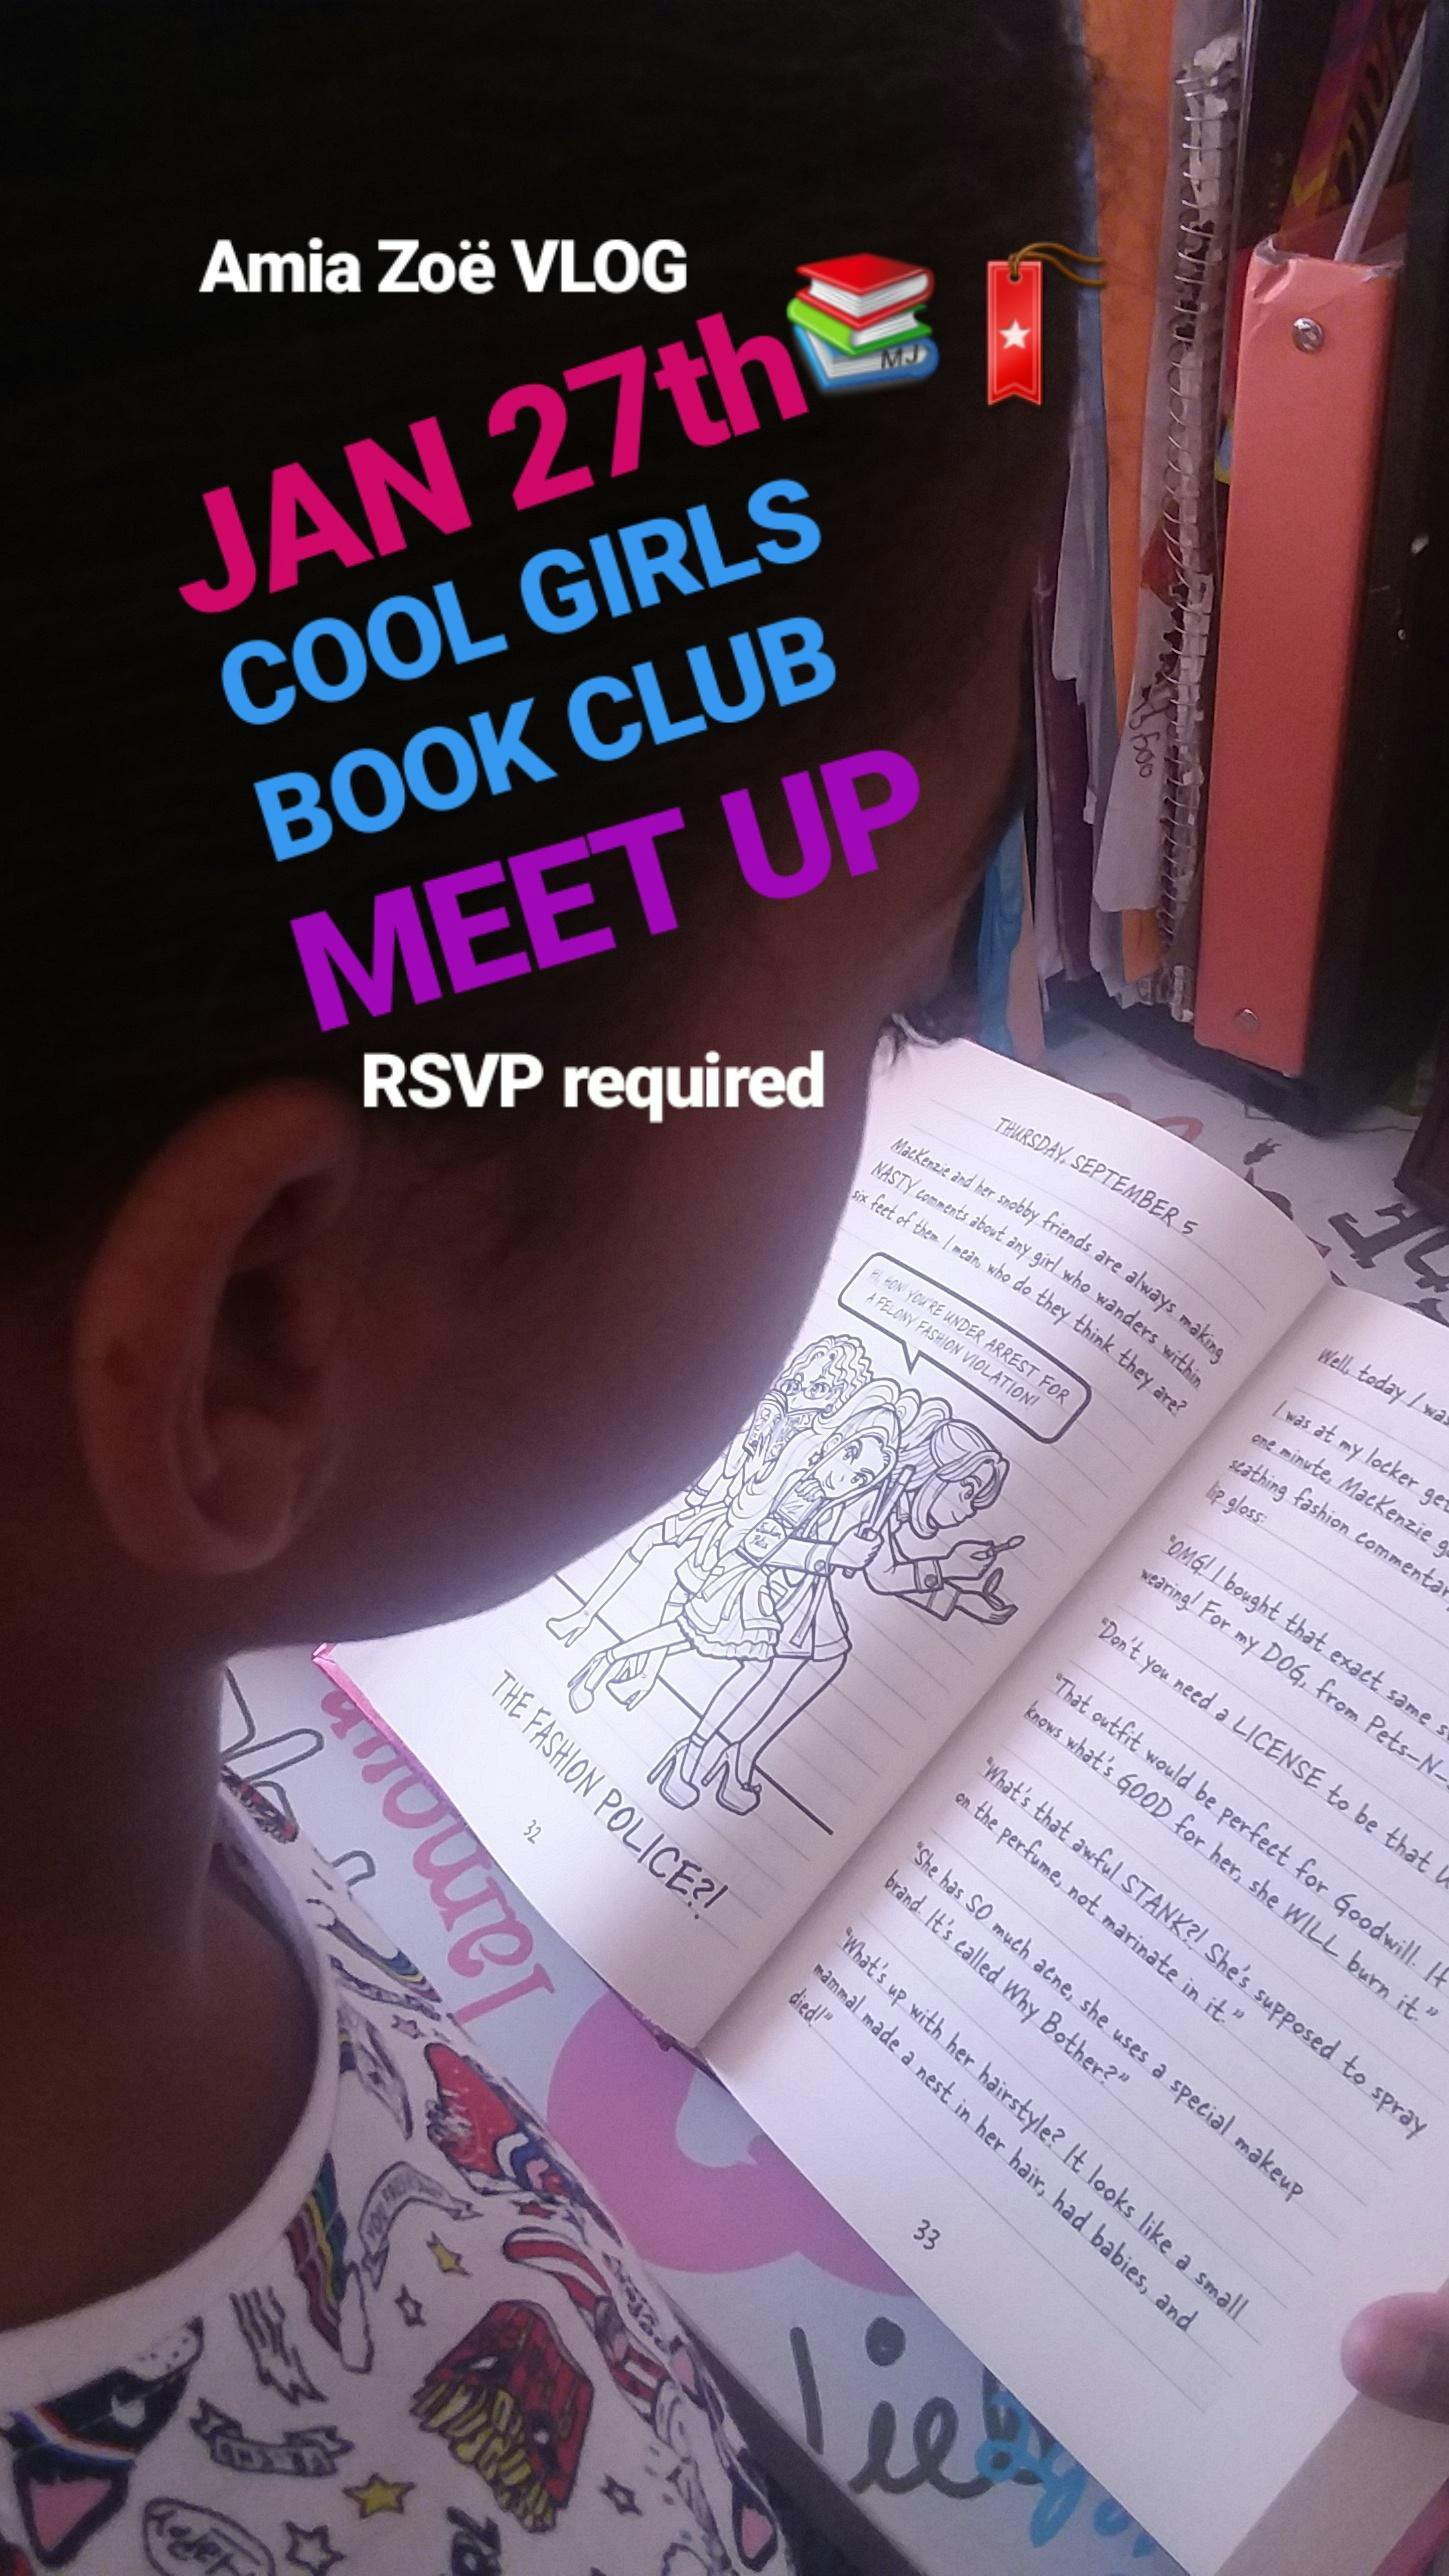 COOL GIRLS BOOK CLUB MEET UP 